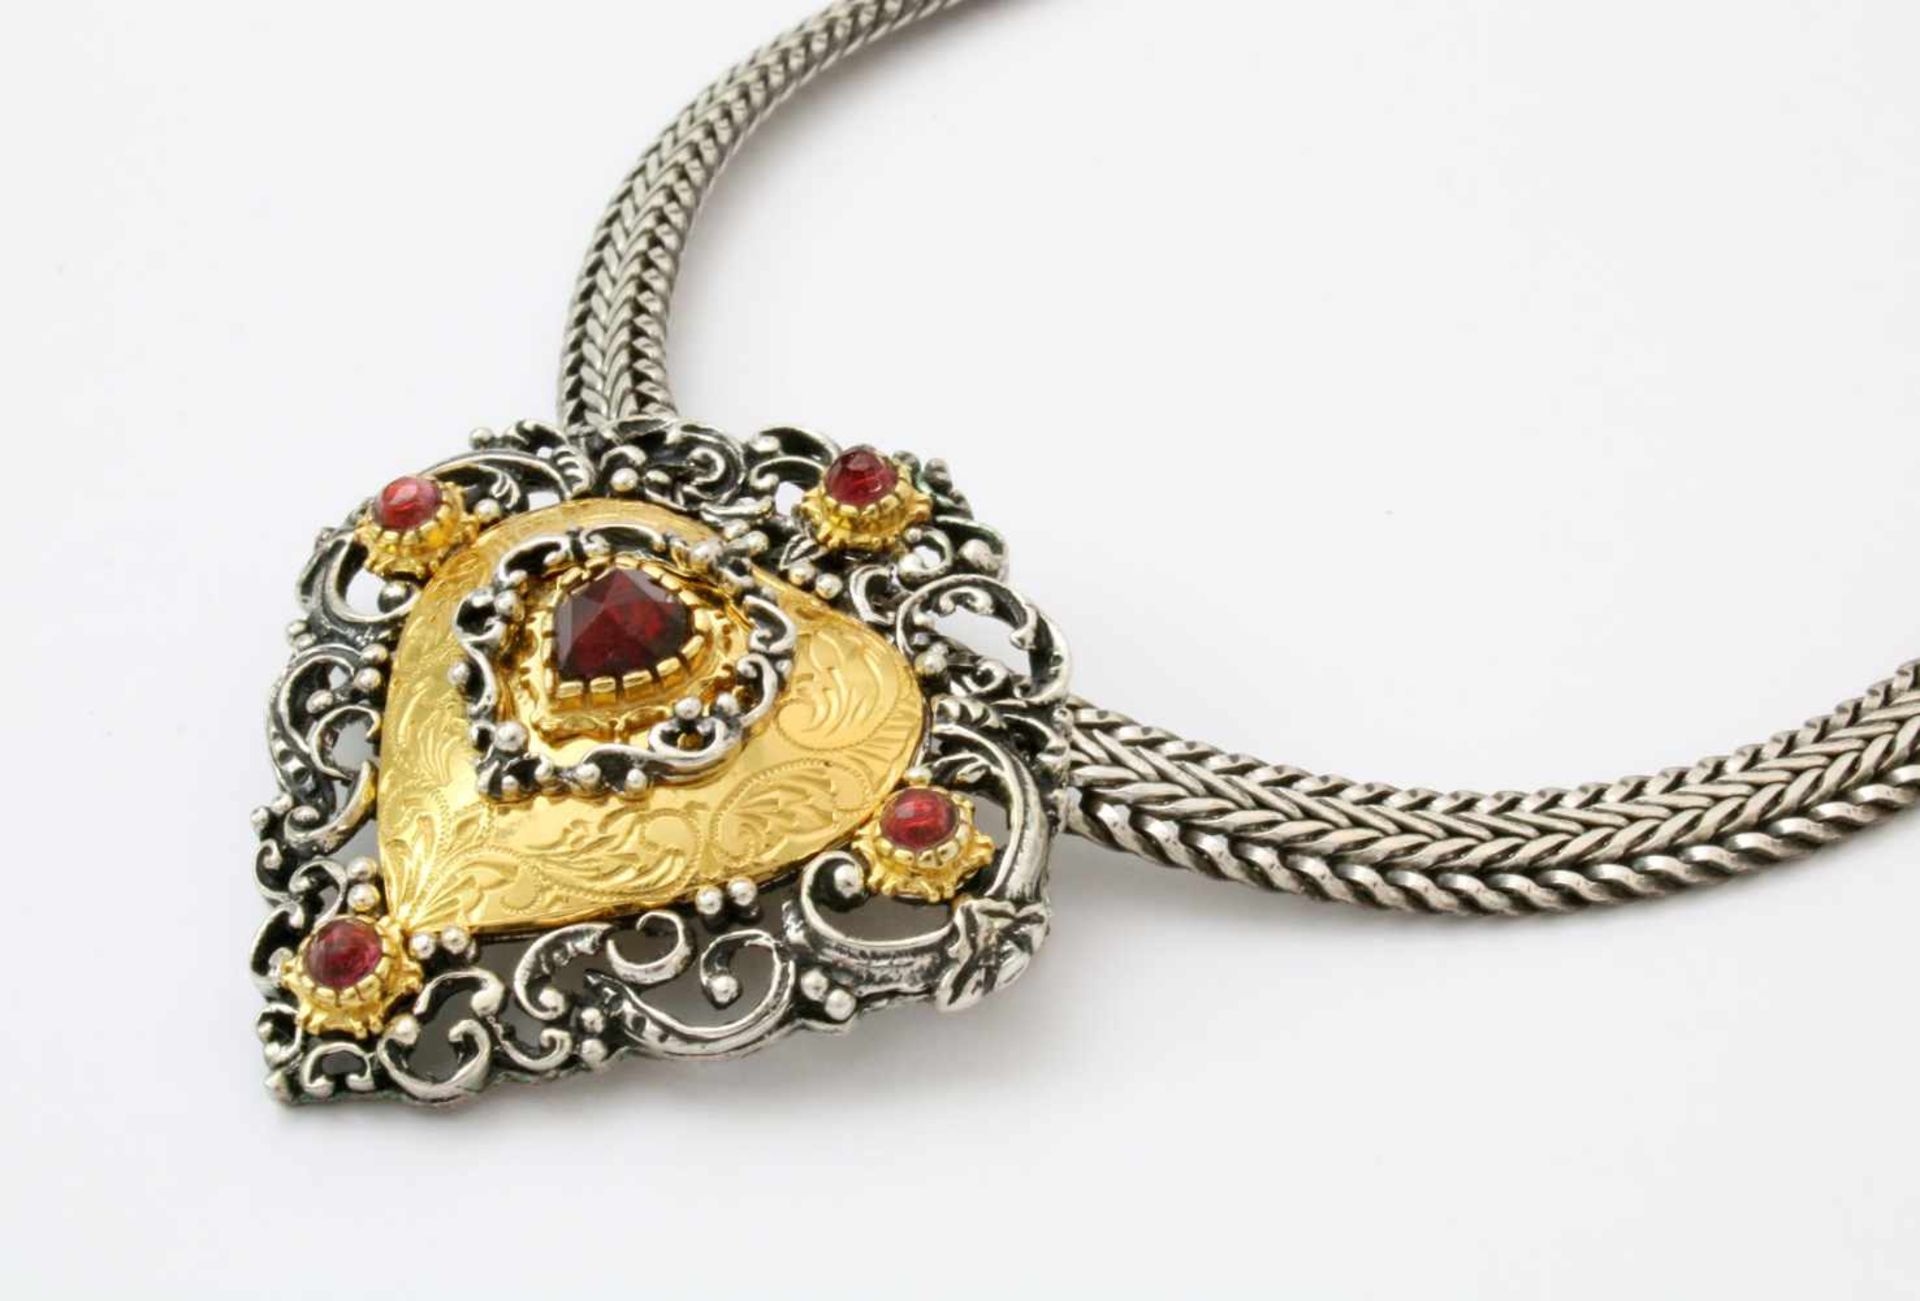 Trachtenschmuck - silberne Halskette mit Anhänger bzw. Brosche 835er Silber, geflochtene Kette. - Bild 2 aus 5